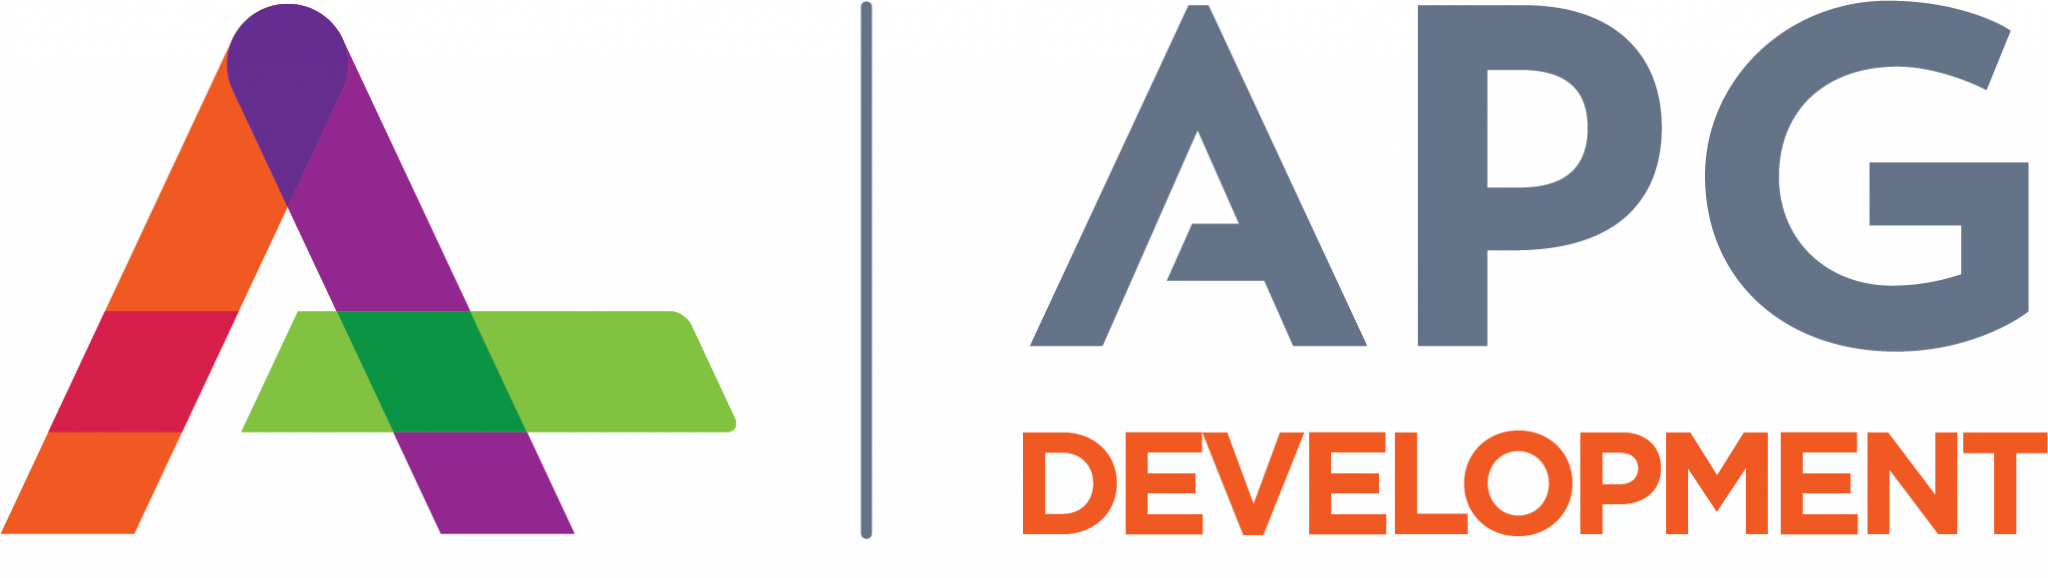 APG Development logo v2 CMYK